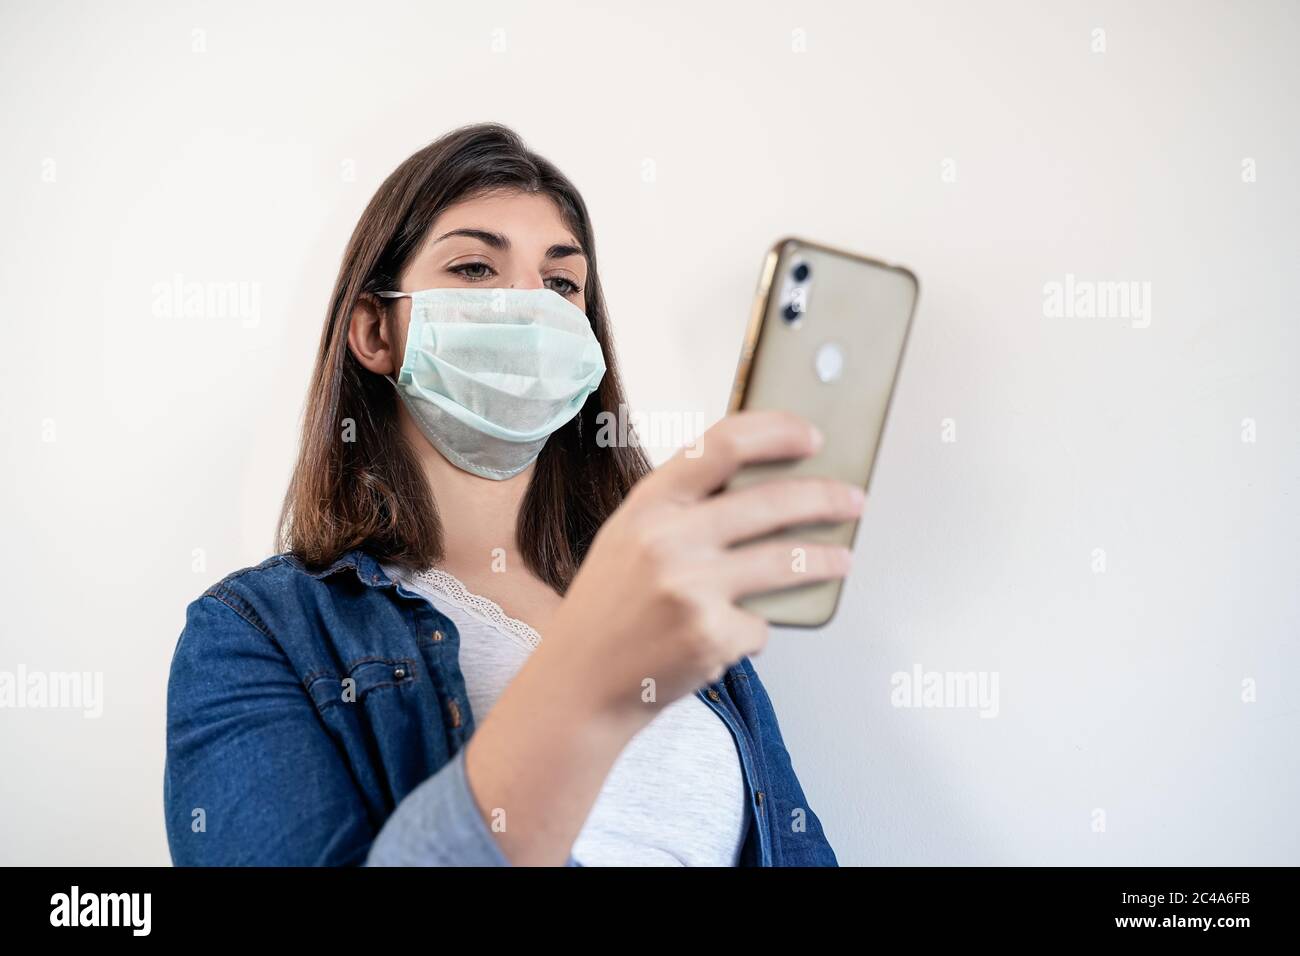 Retrato de mujer con máscara de protección médica utilizando su smartphone. Foto de stock